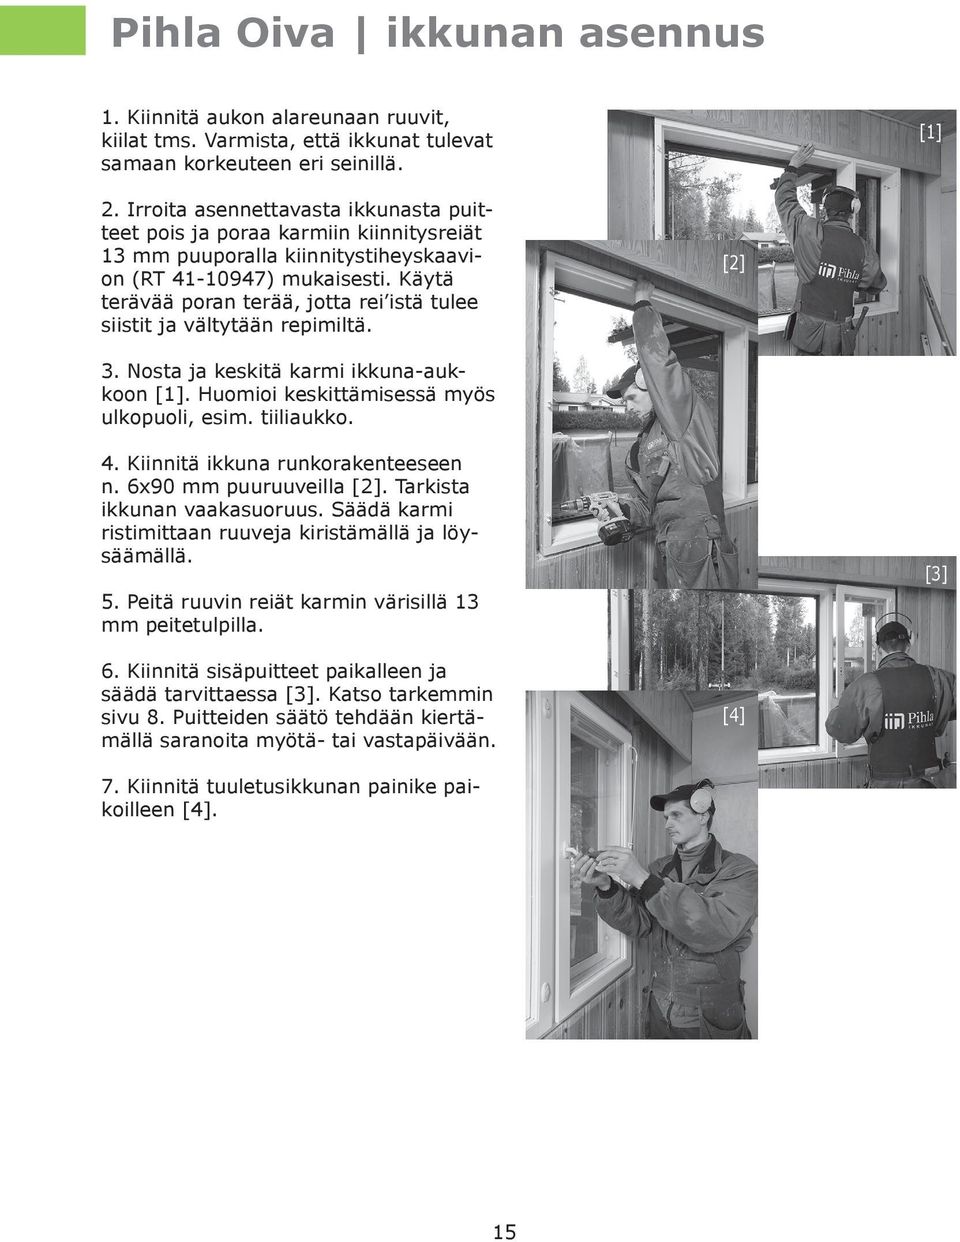 Käytä terävää poran terää, jotta rei istä tulee siistit ja vältytään repimiltä. [2] 3. Nosta ja keskitä karmi ikkuna-aukkoon [1]. Huomioi keskittämisessä myös ulkopuoli, esim. tiiliaukko. 4.